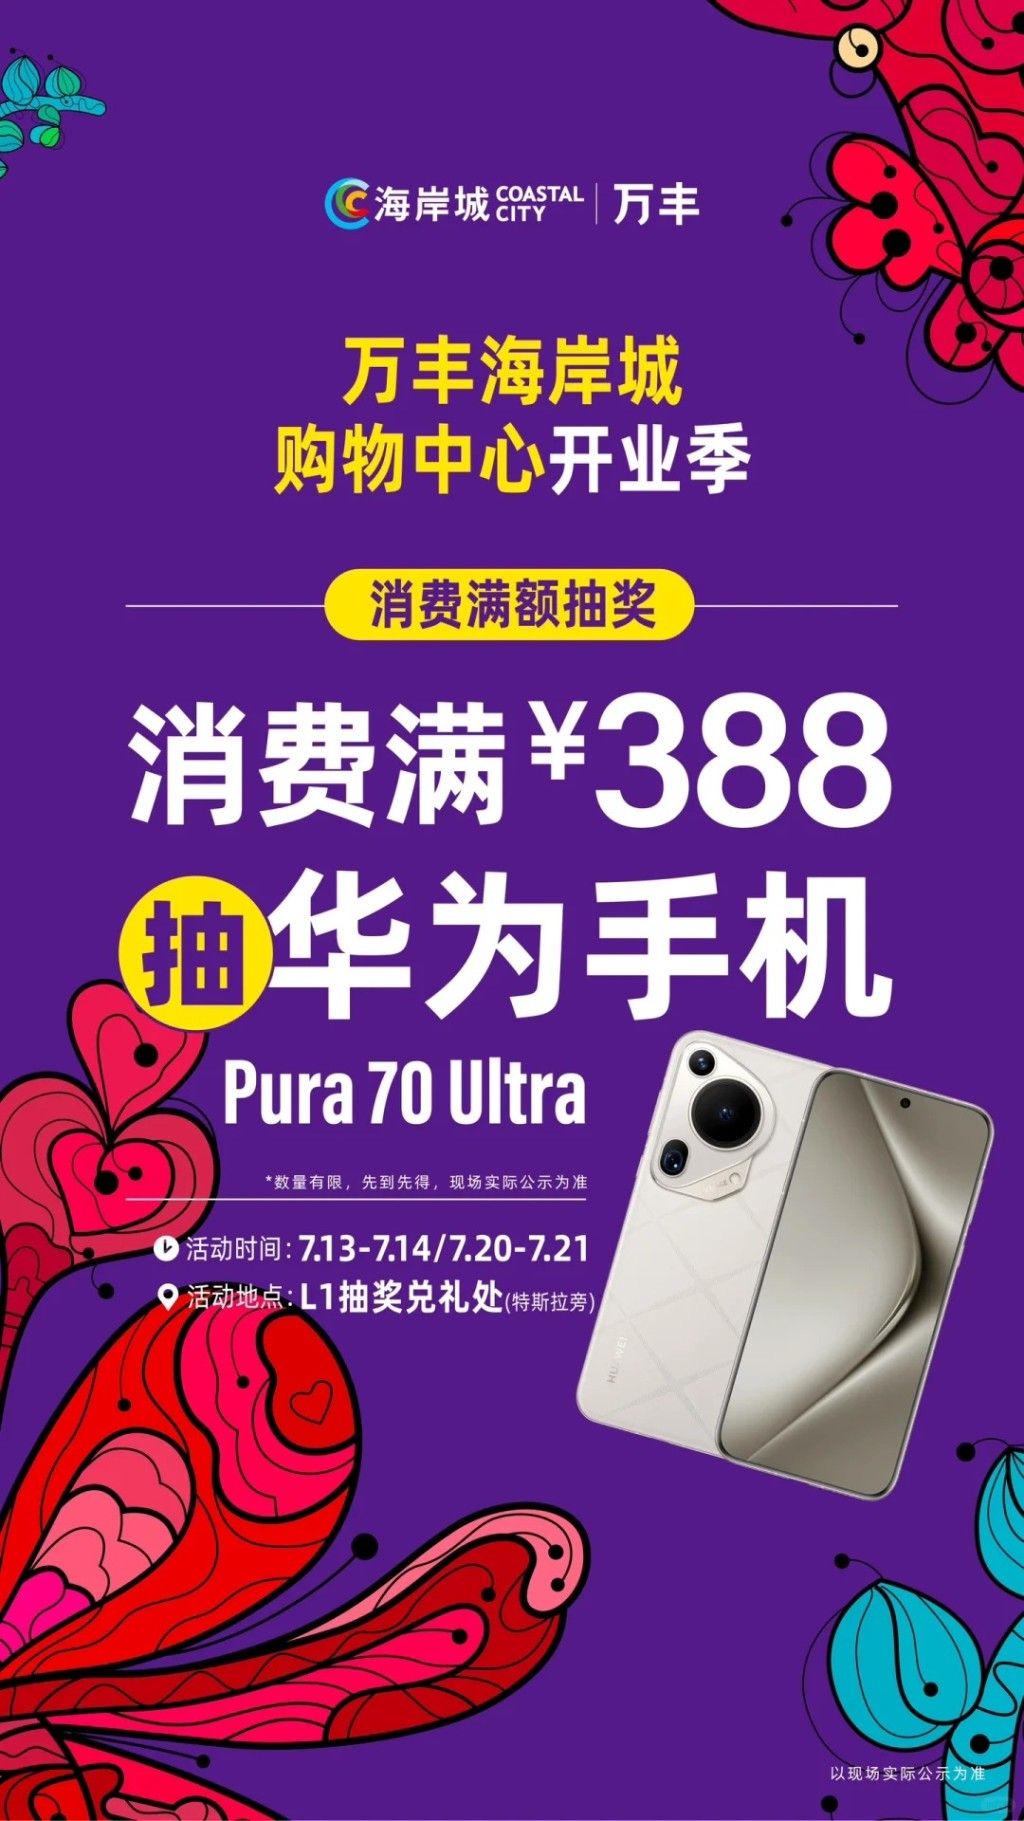 消費滿¥388可參加華為Pura 70 Ultra最新款手機抽獎